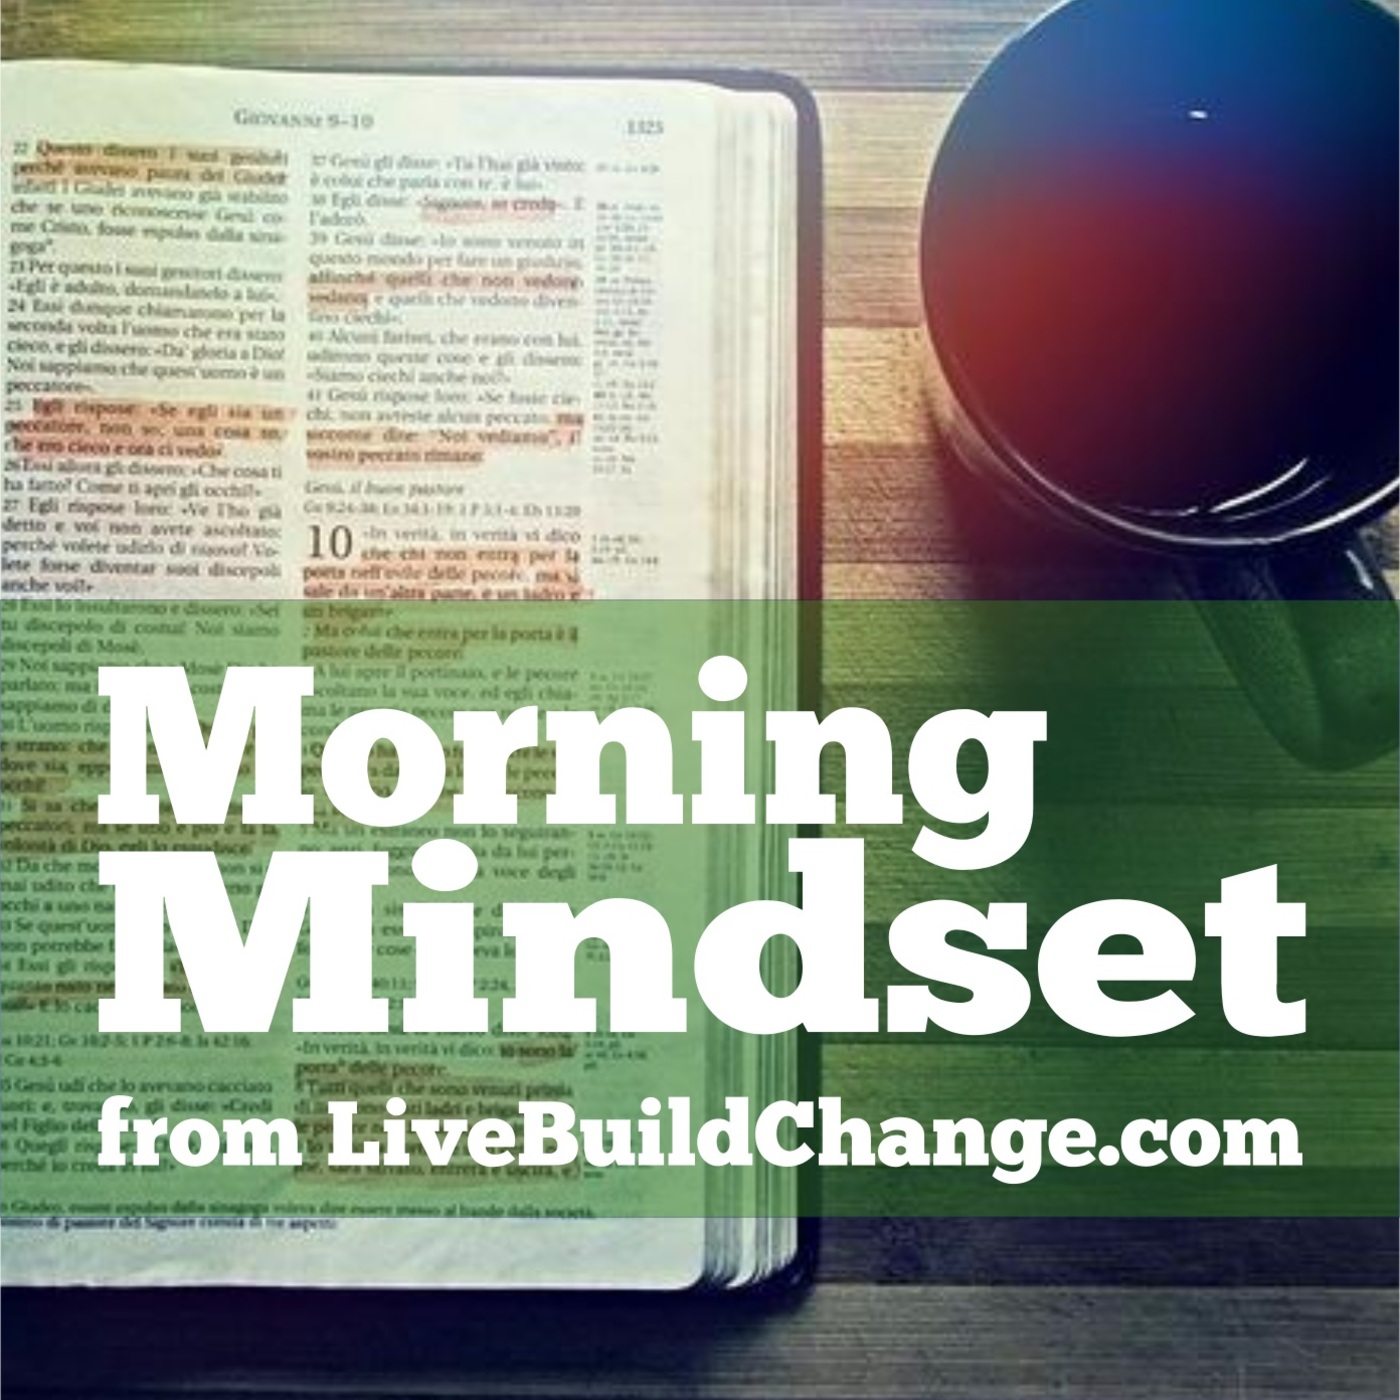 November 22 Morning Mindset from Live Build Change